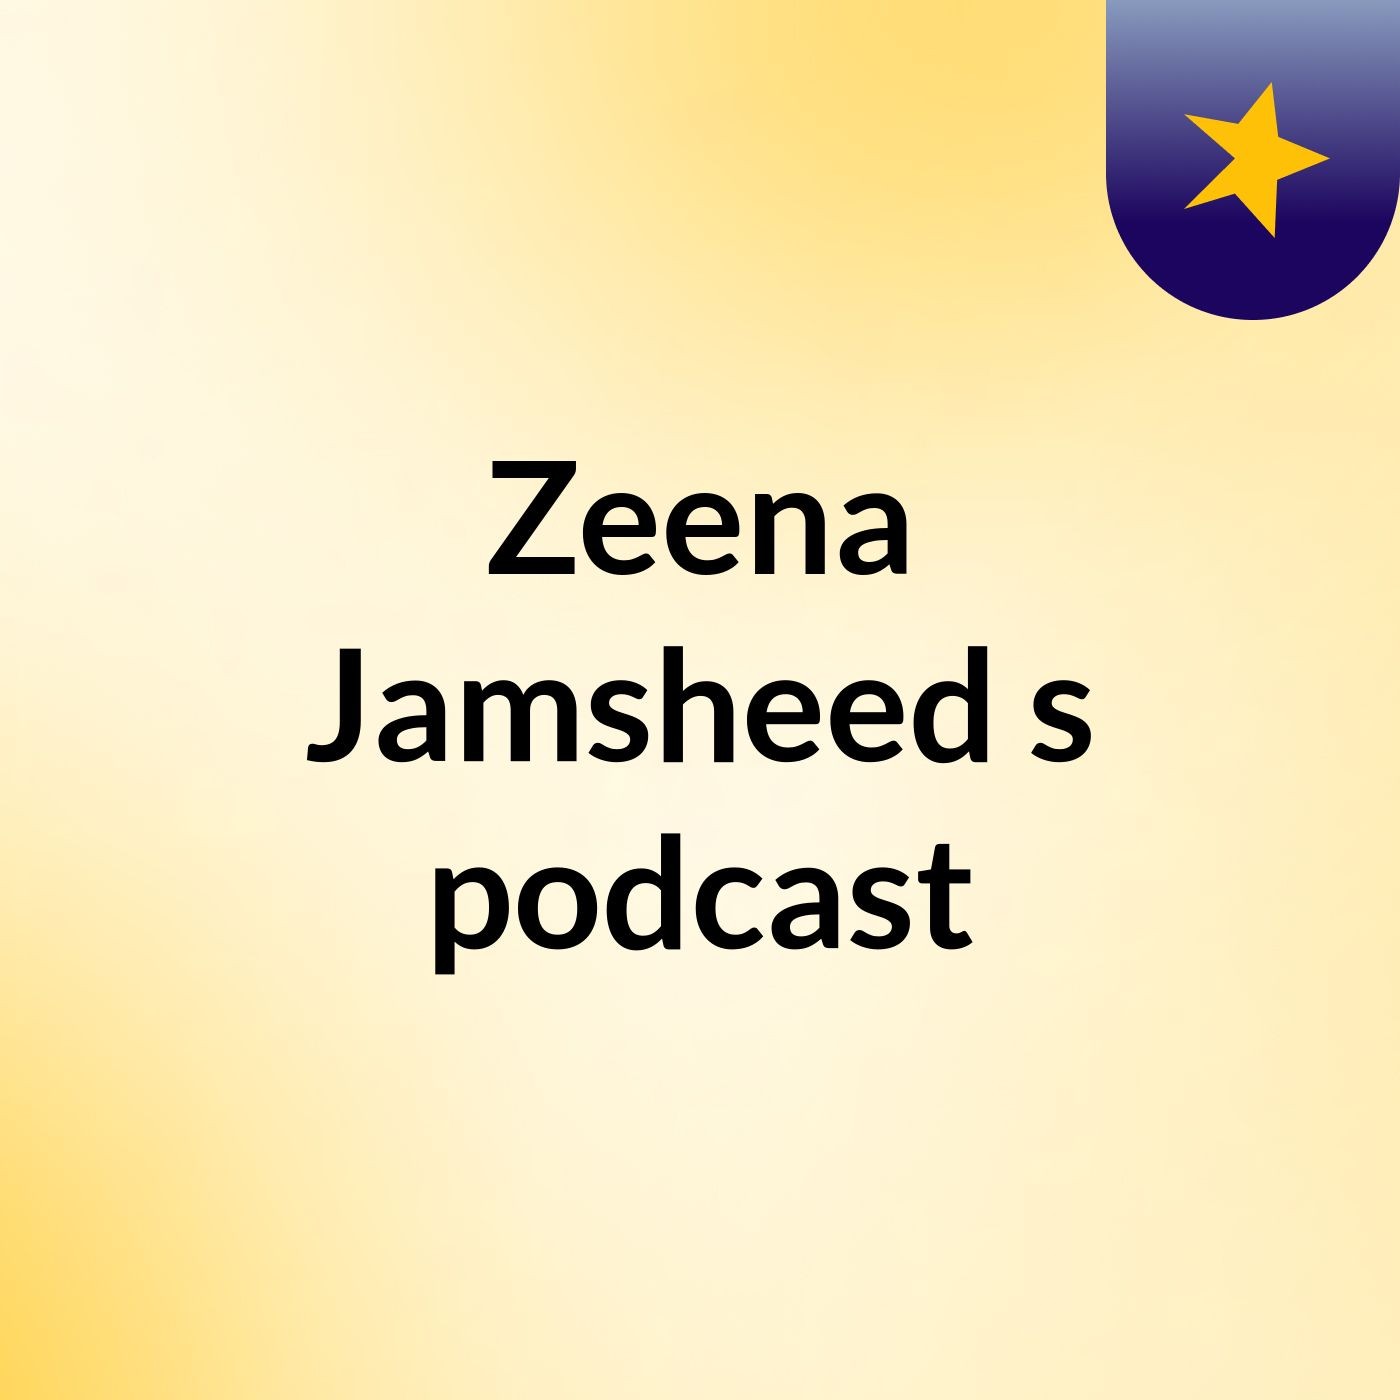 Zeena Jamsheed's podcast